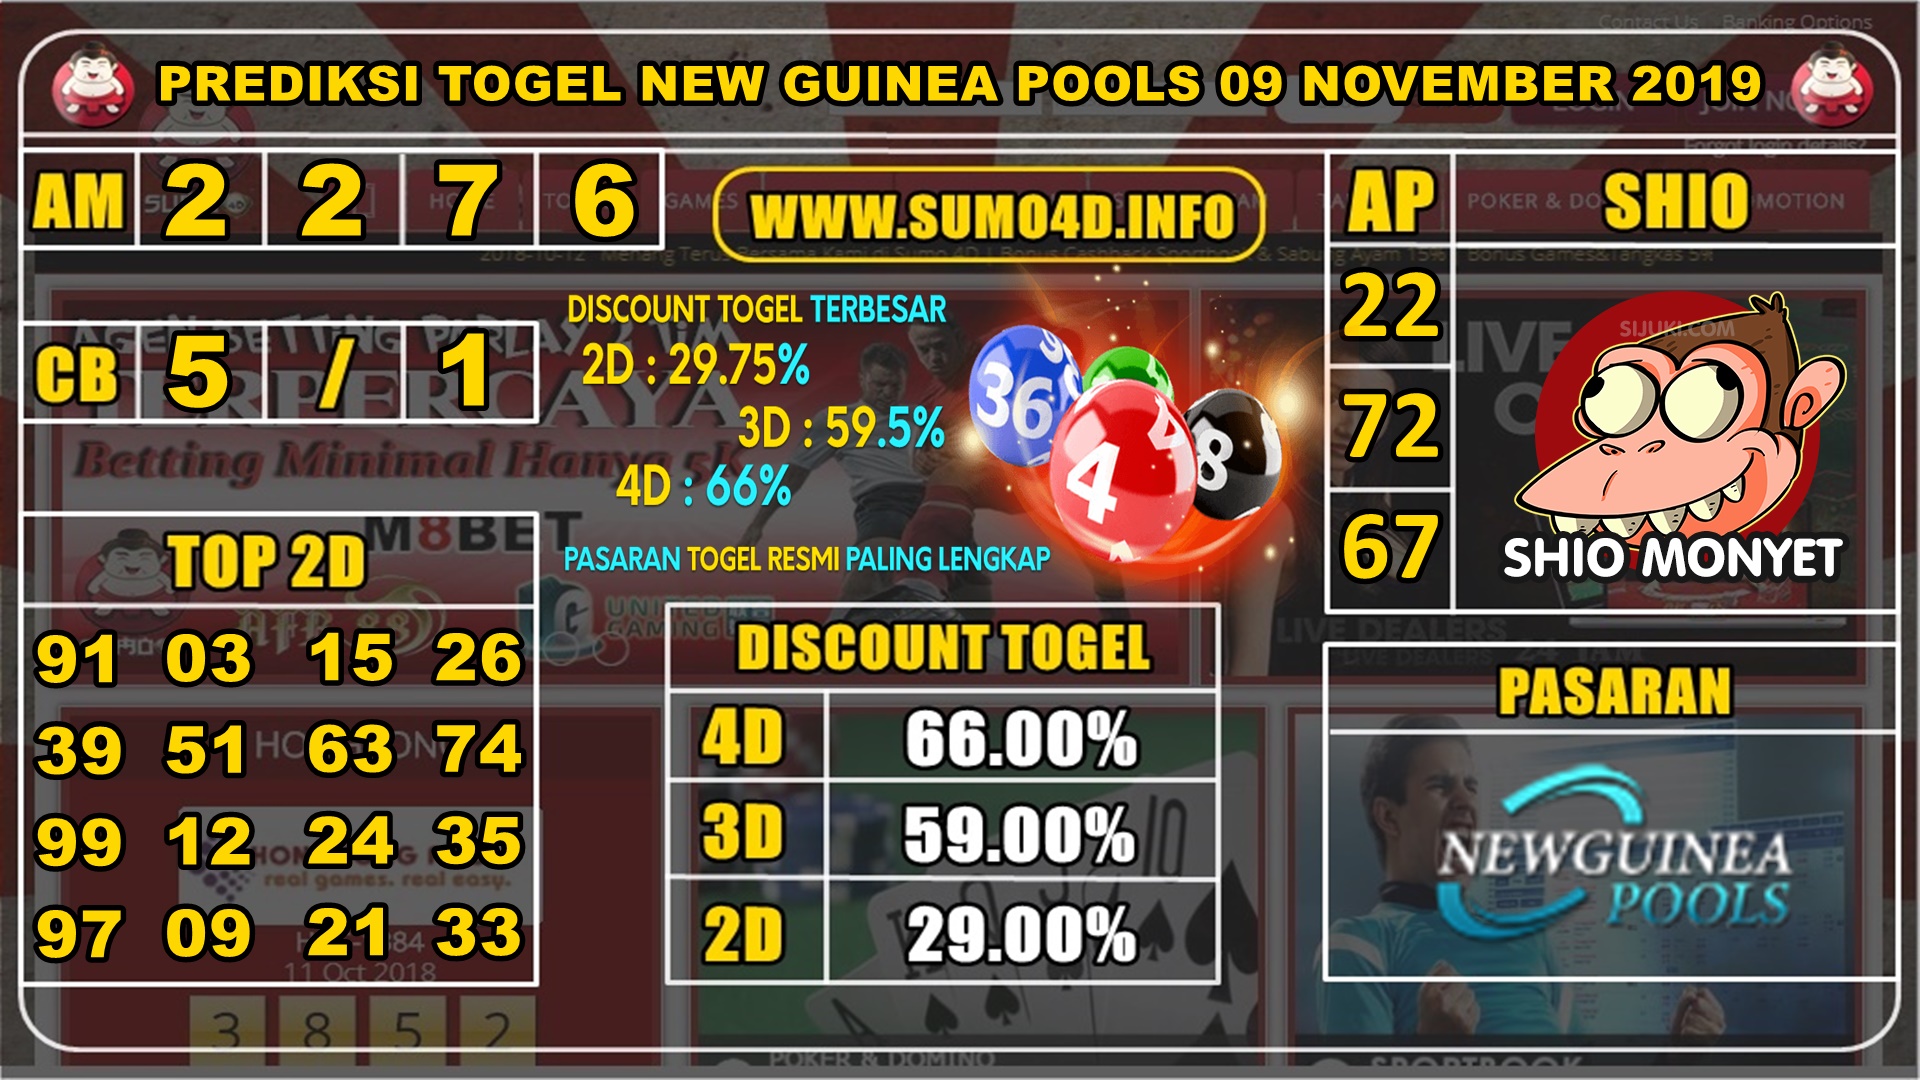 PREDIKSI TOGEL NEW GUINEA POOLS 09 NOVEMBER 2019